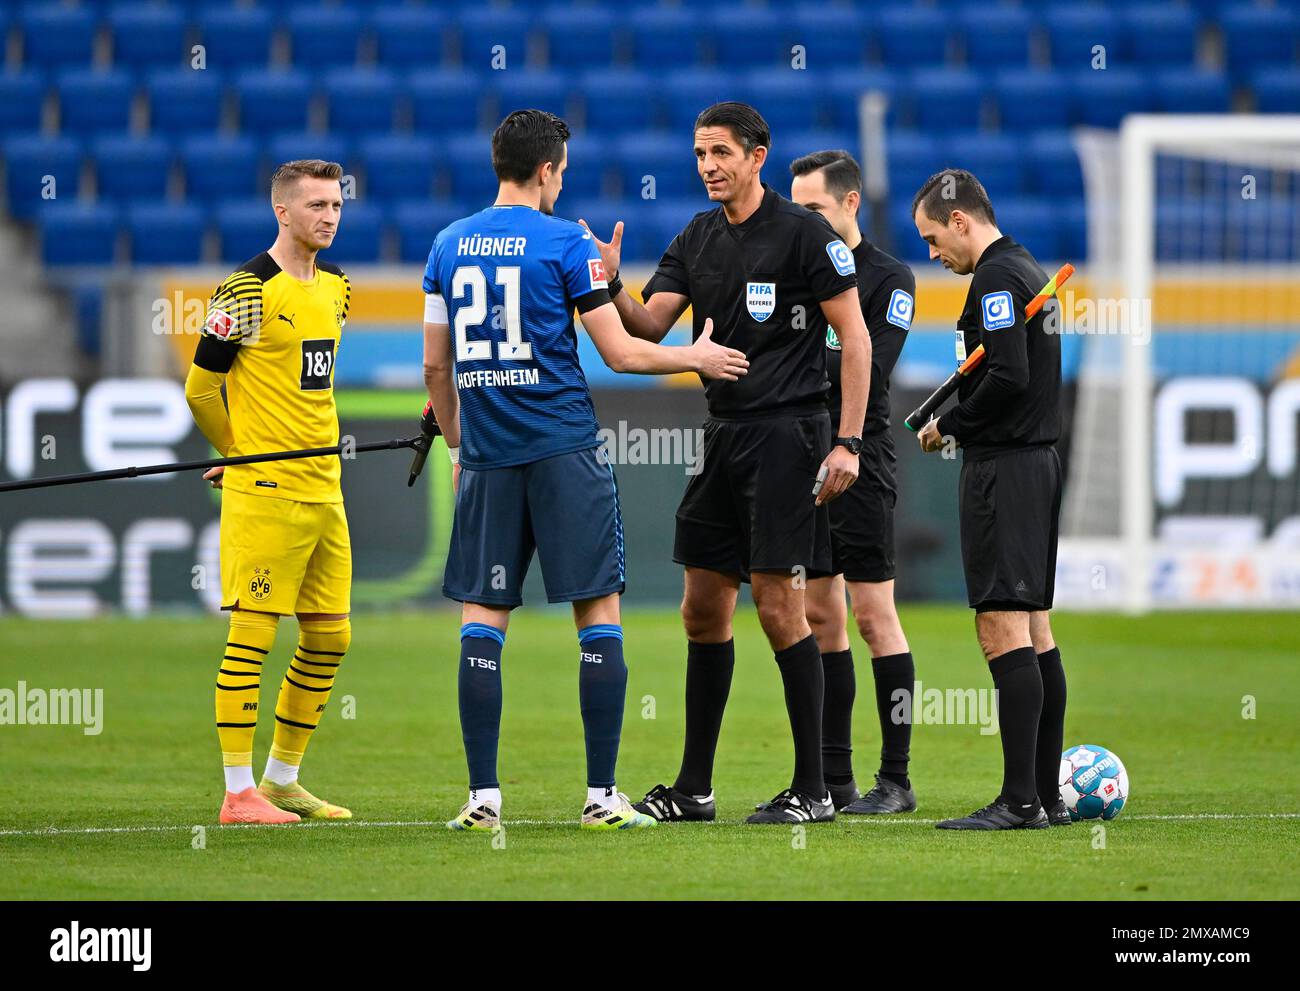 Vor dem Beginn eines Bundesliga-Spiels: Schiedsrichter Deniz Aytekin, Assistent Markus Sinn, Assistent Christian Dietz, beim Münzwurf, Sitzplatzauswahl Stockfoto